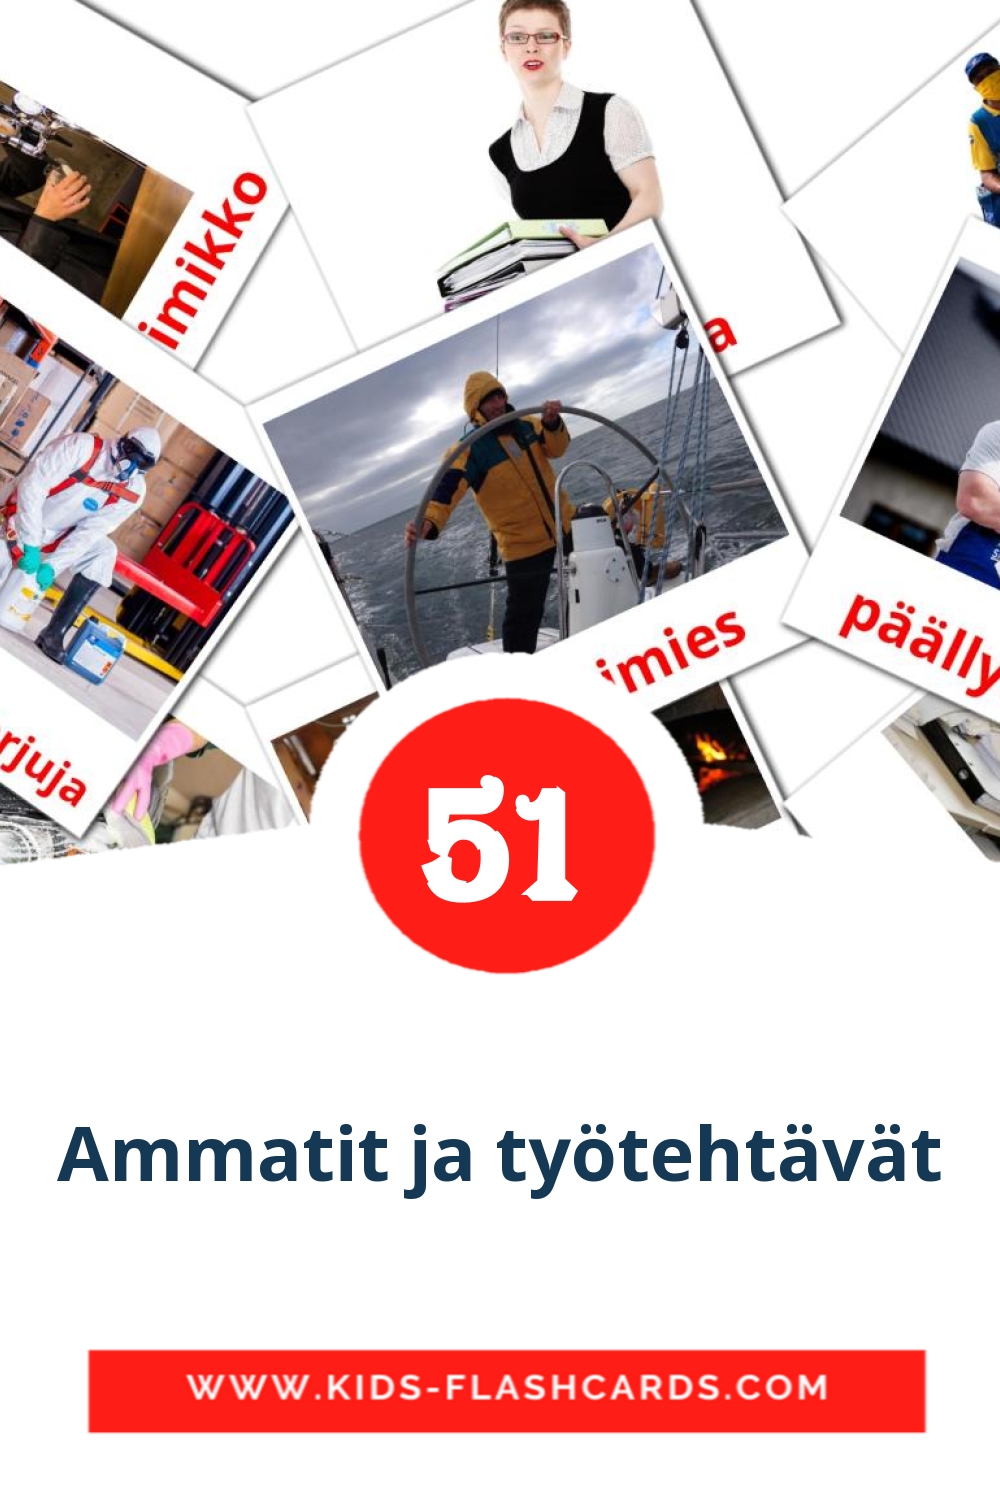 Ammatit ja työtehtävät на финском для Детского Сада (51 карточка)